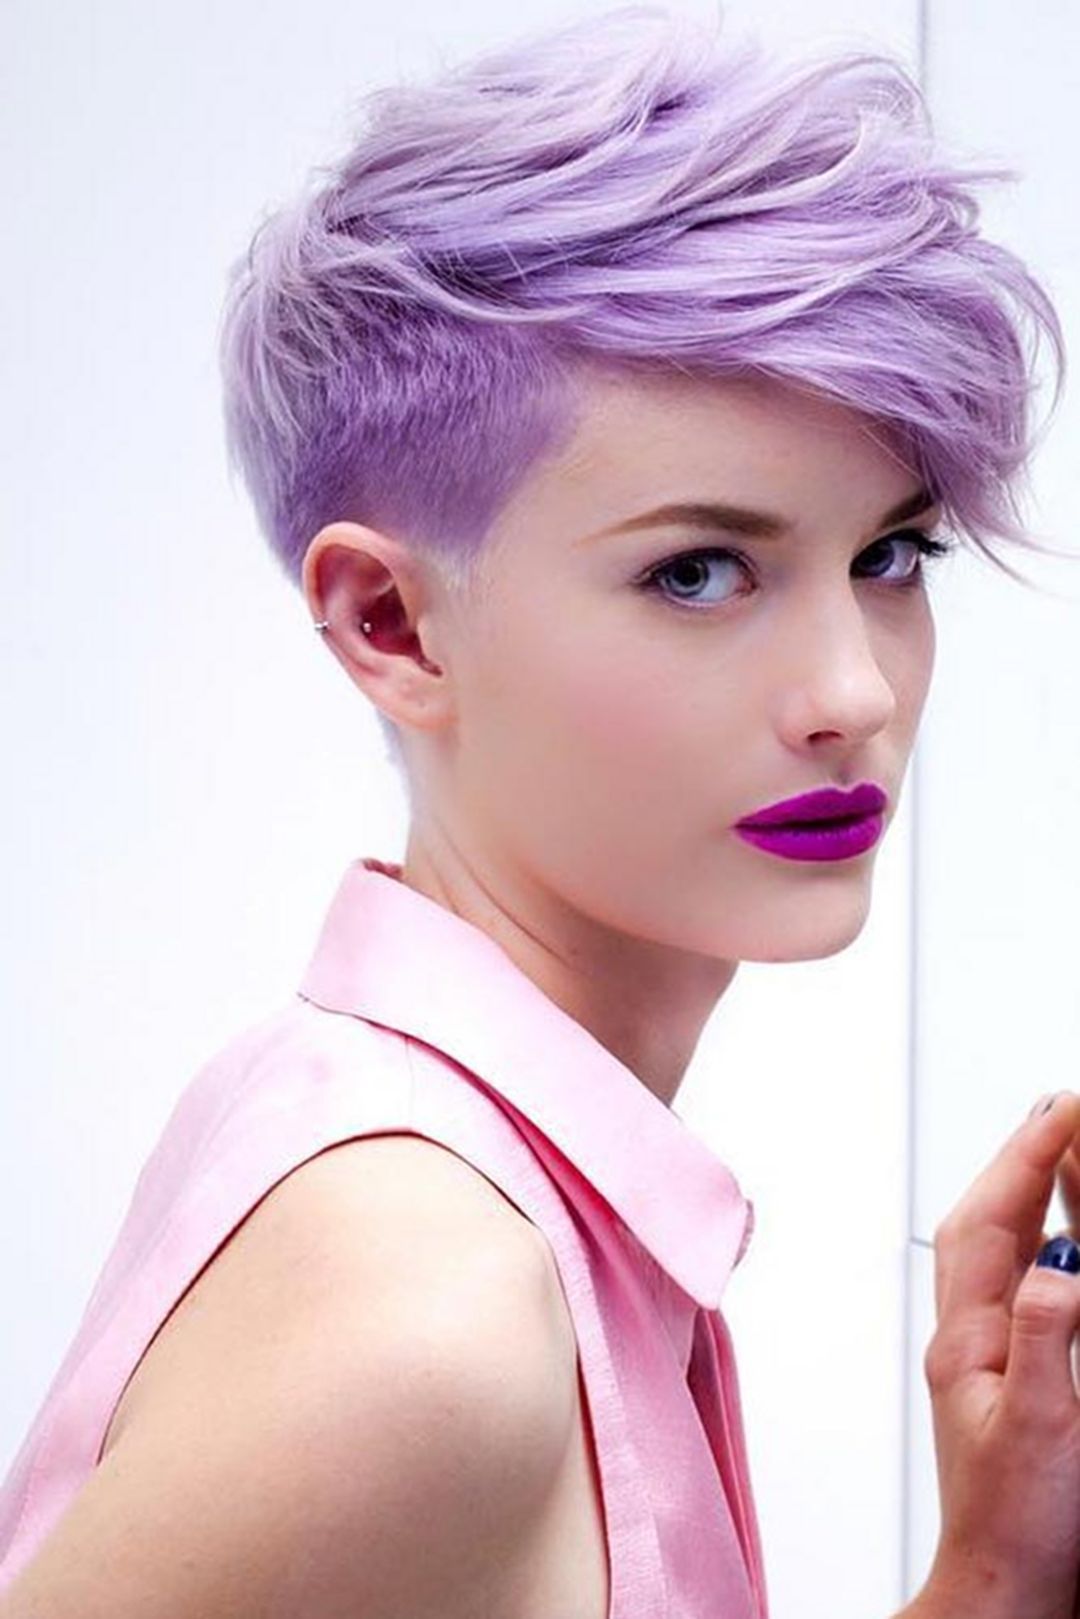 39 Cute Pixie Haircut Ideas For Women Looks More Pretty -   16 hair Purple pixie ideas